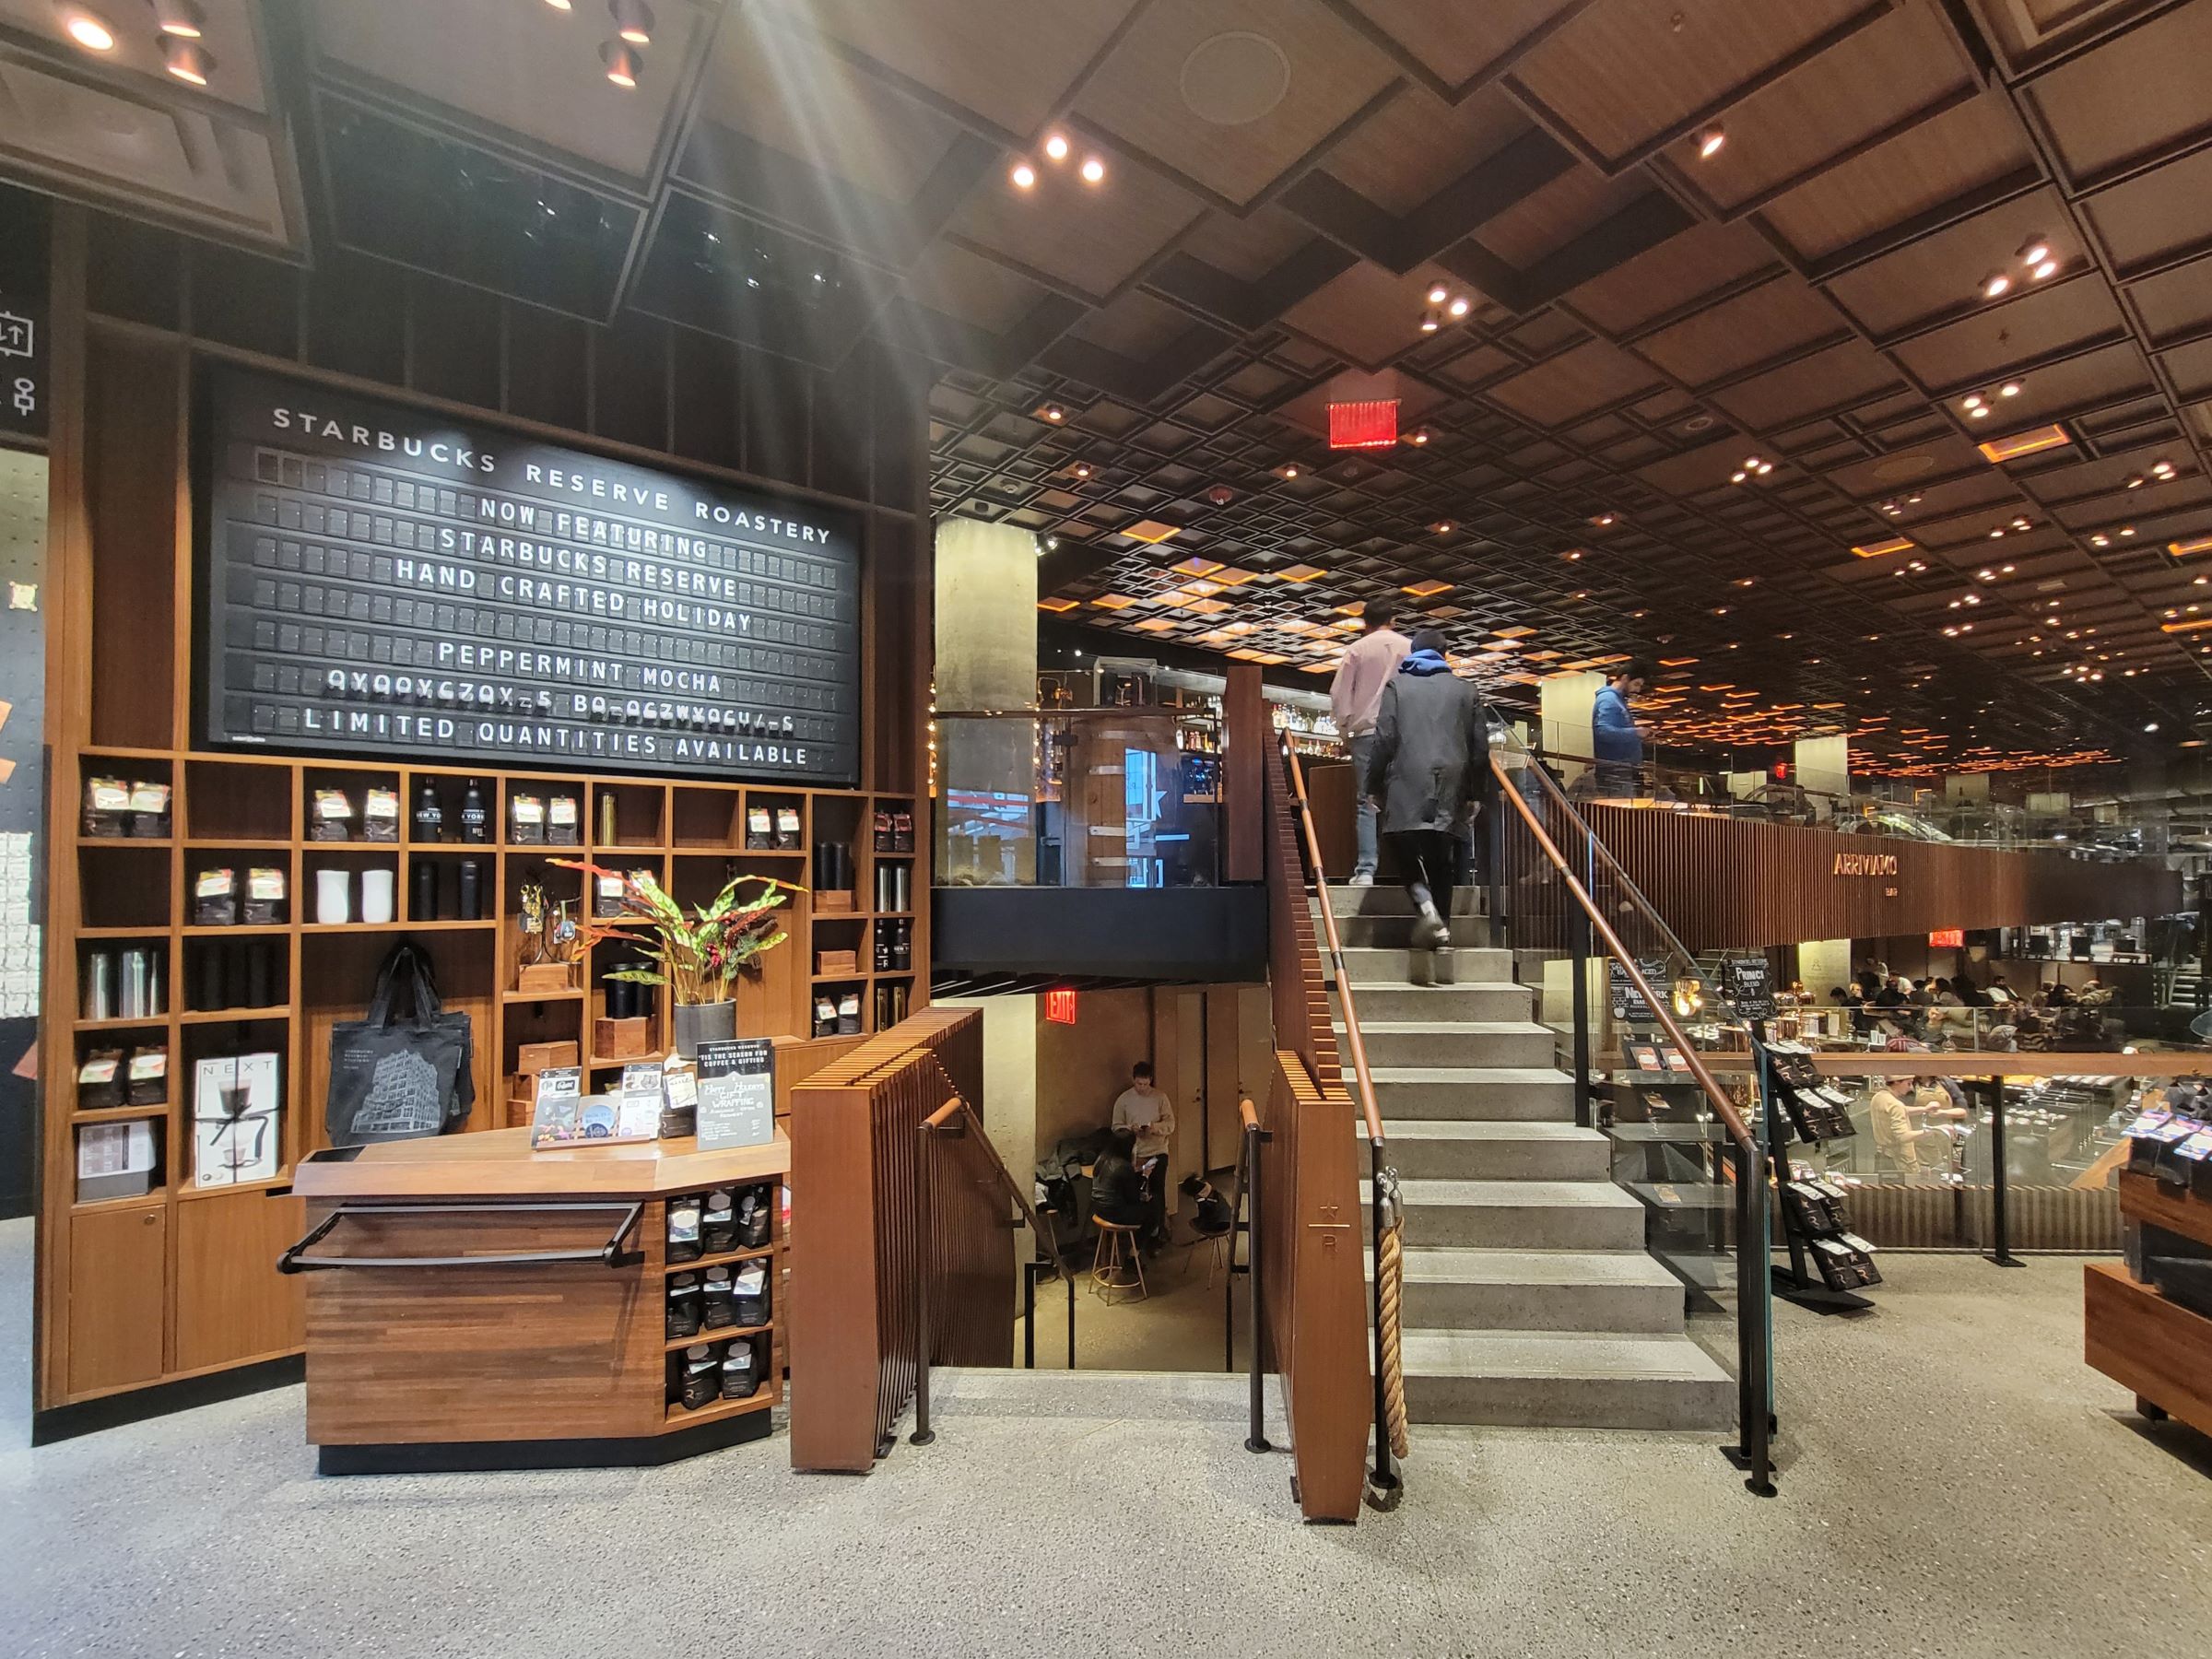 전세계 6곳밖에 없는 스타벅스 리저브 로스터리(Starbucks Reserve Roastery)인 뉴욕 맨하탄 첼시 지점